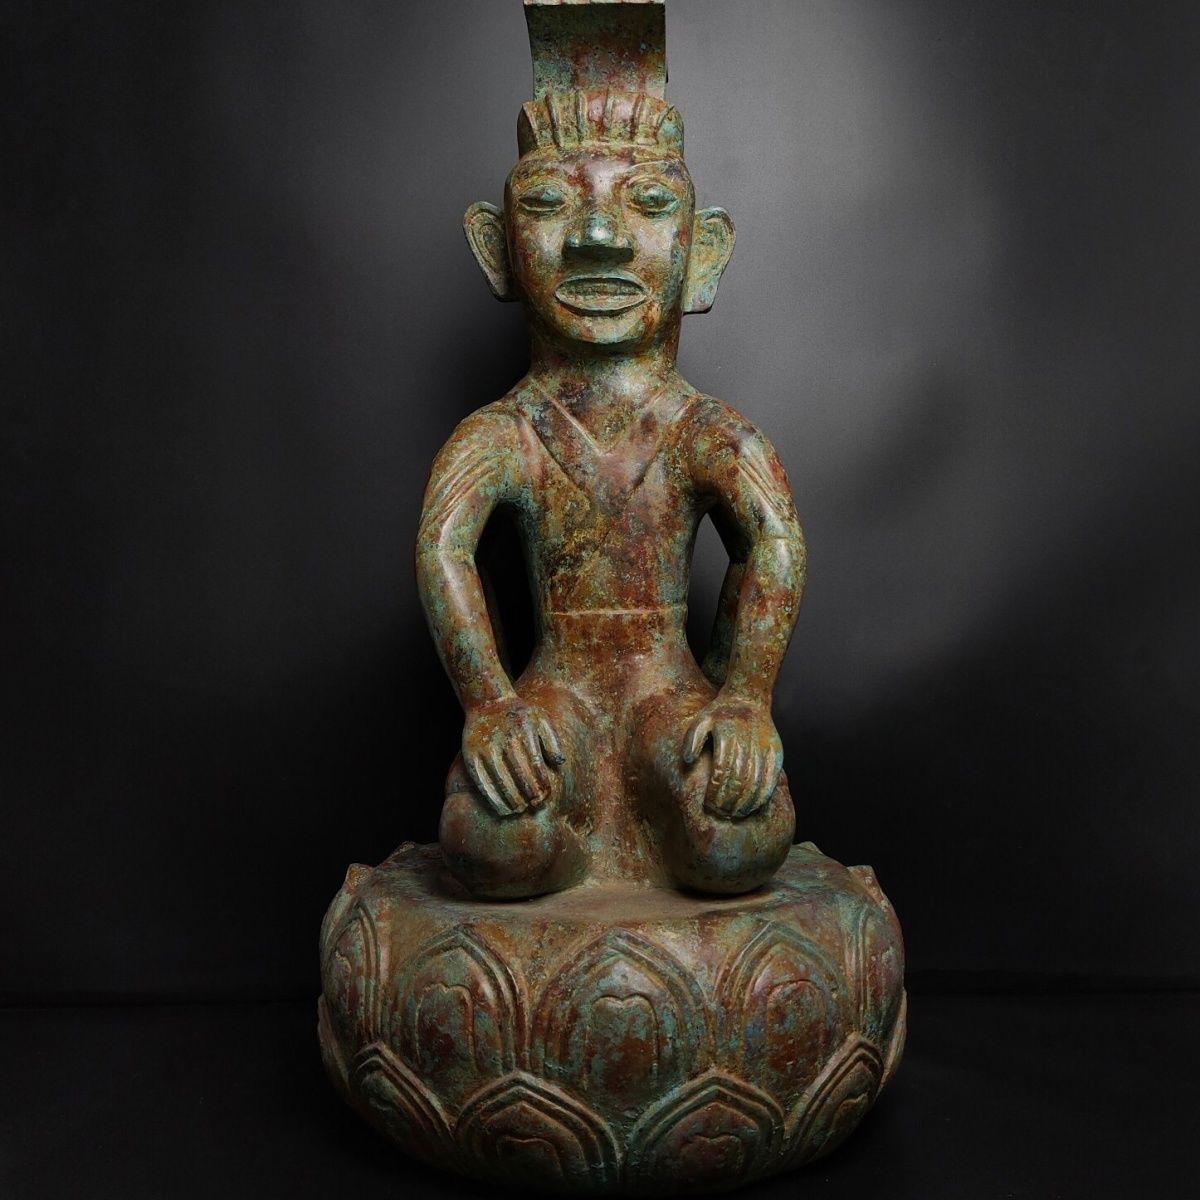 Alte Sammlung von diesem Vintage Bronze zweiseitigen sitzenden Mann auf Lotus Stand, einzigartigen Stil und exquisit geschnitzt, es ist ein wirklich einzigartiges und besonderes Sammlerstück. 

Einzelheiten:
MATERIAL: Bronze
Höhe 76 cm 
Länge 42 cm